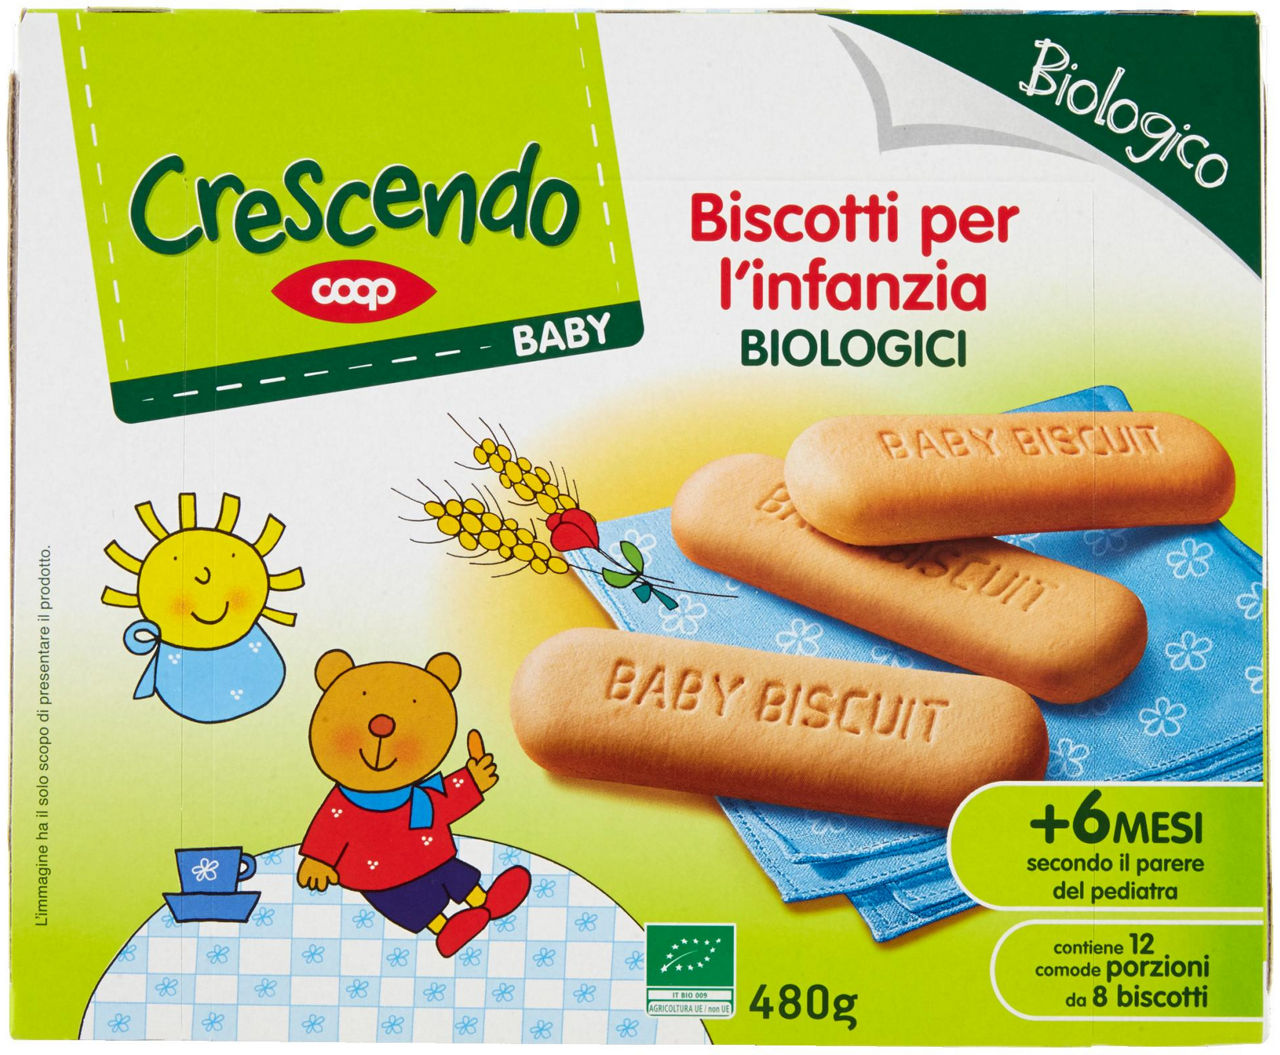 Baby biscotti per l'infanzia biologici 480 g